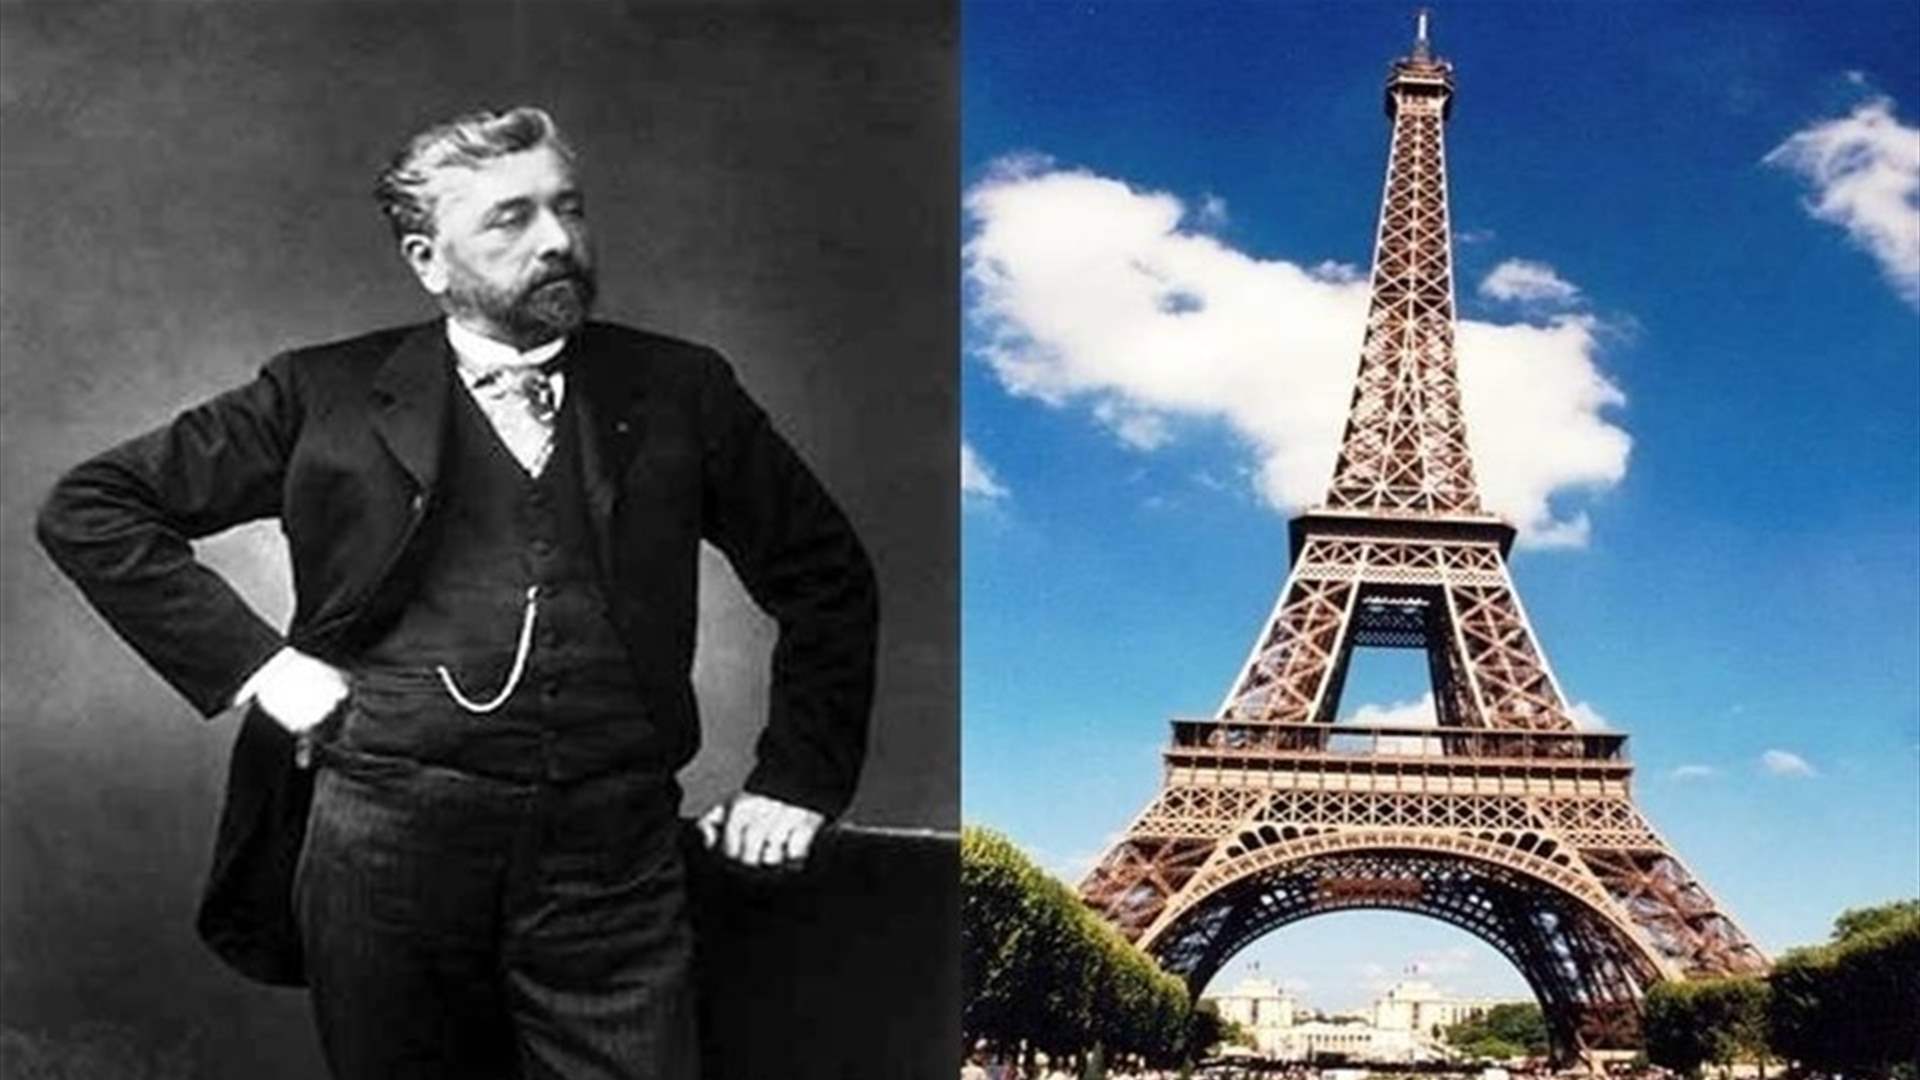 فرنسا تحيي مئوية غوستاف إيفل عراب البرج الباريسي الشهير